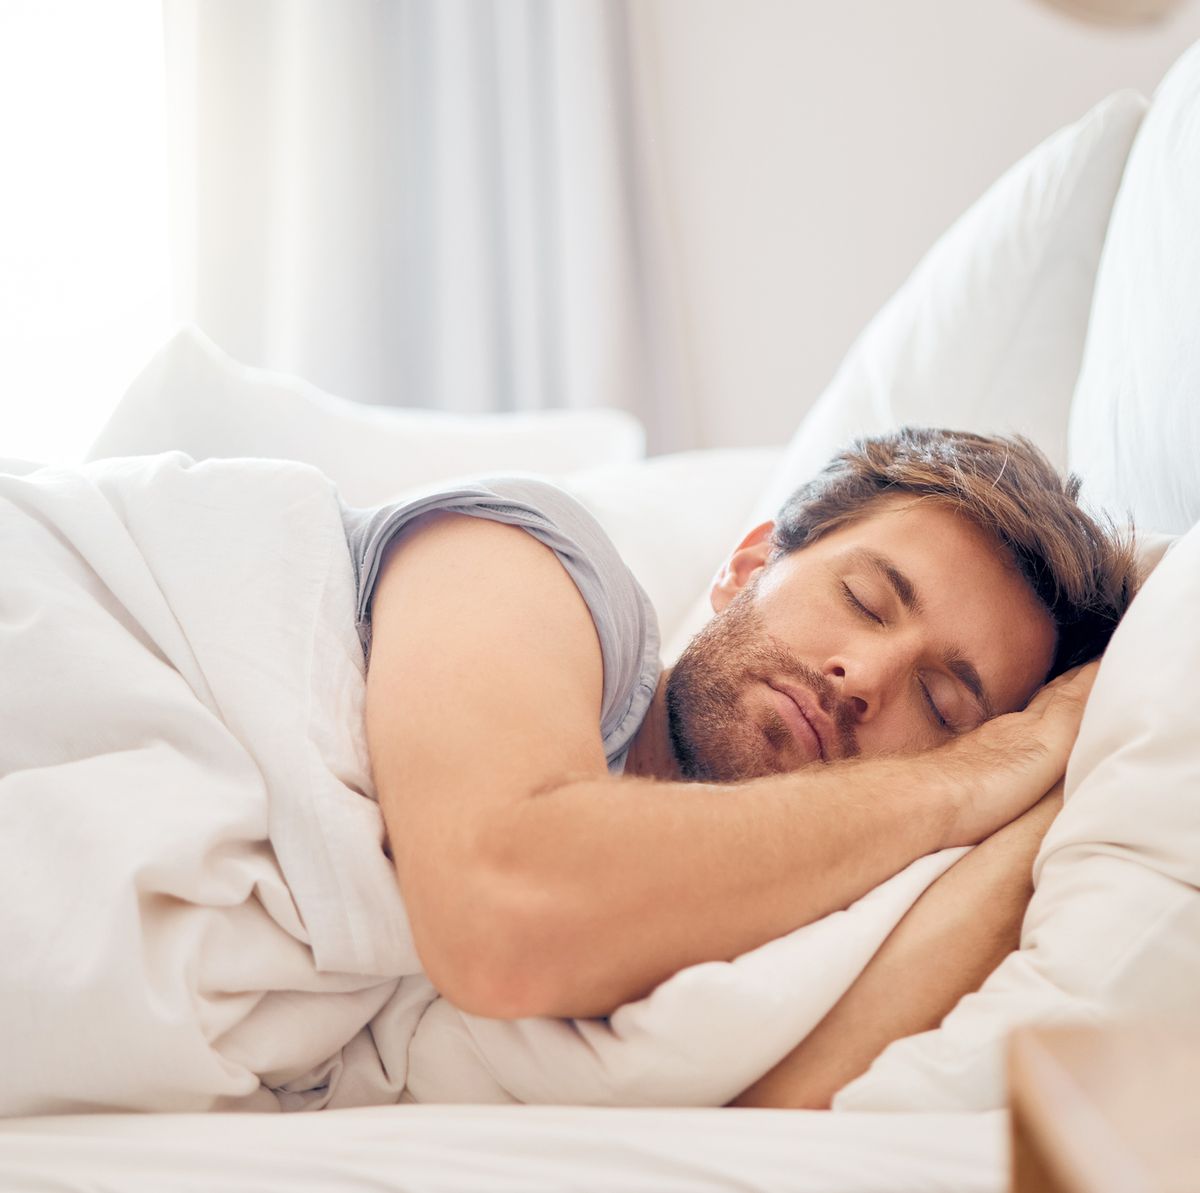 Almohadas según tu postura al dormir: de lado, boca arriba o boca abajo 